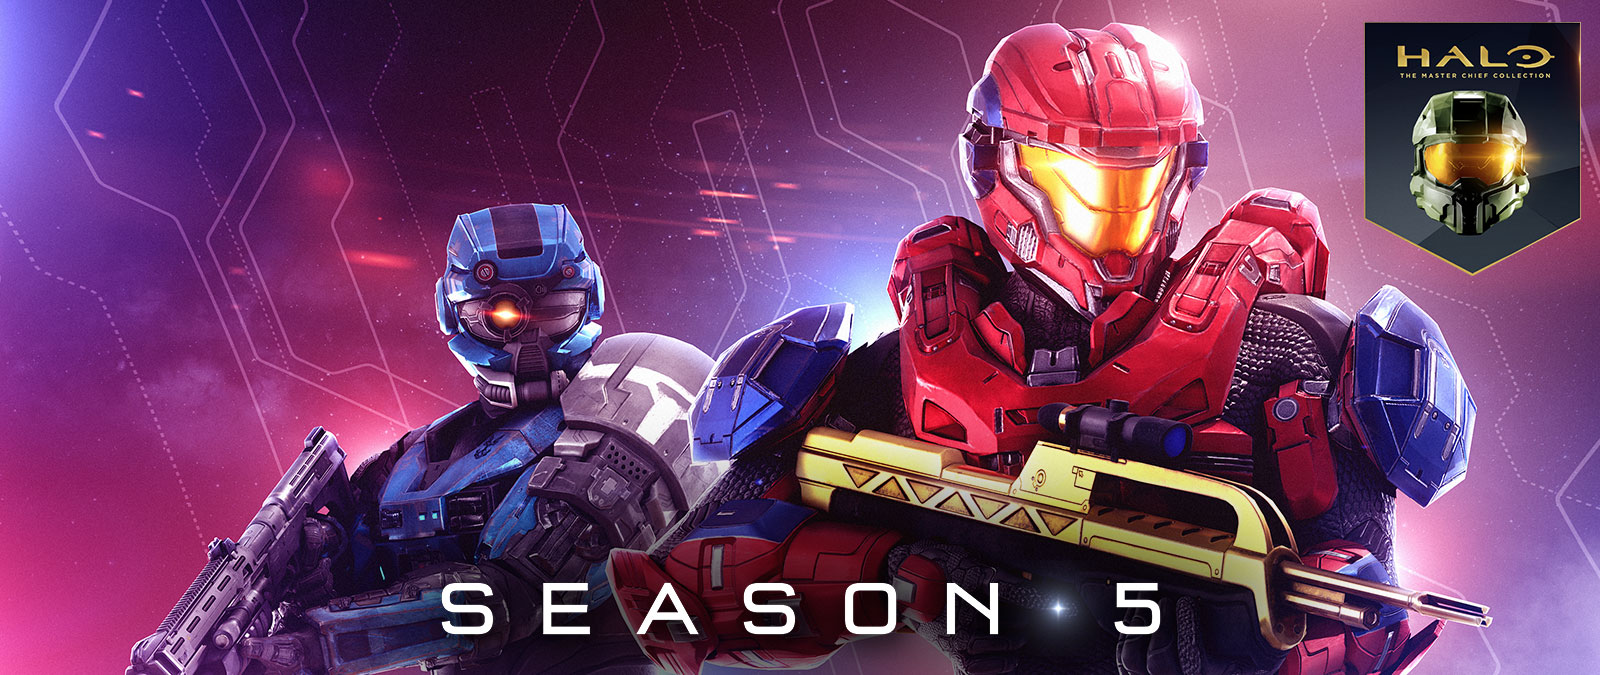 Halo: The Master Chief Collection, Season 5, en röd spartan håller ett guldigt vapen och en blå spartan bär en specialhjälm med ett öga